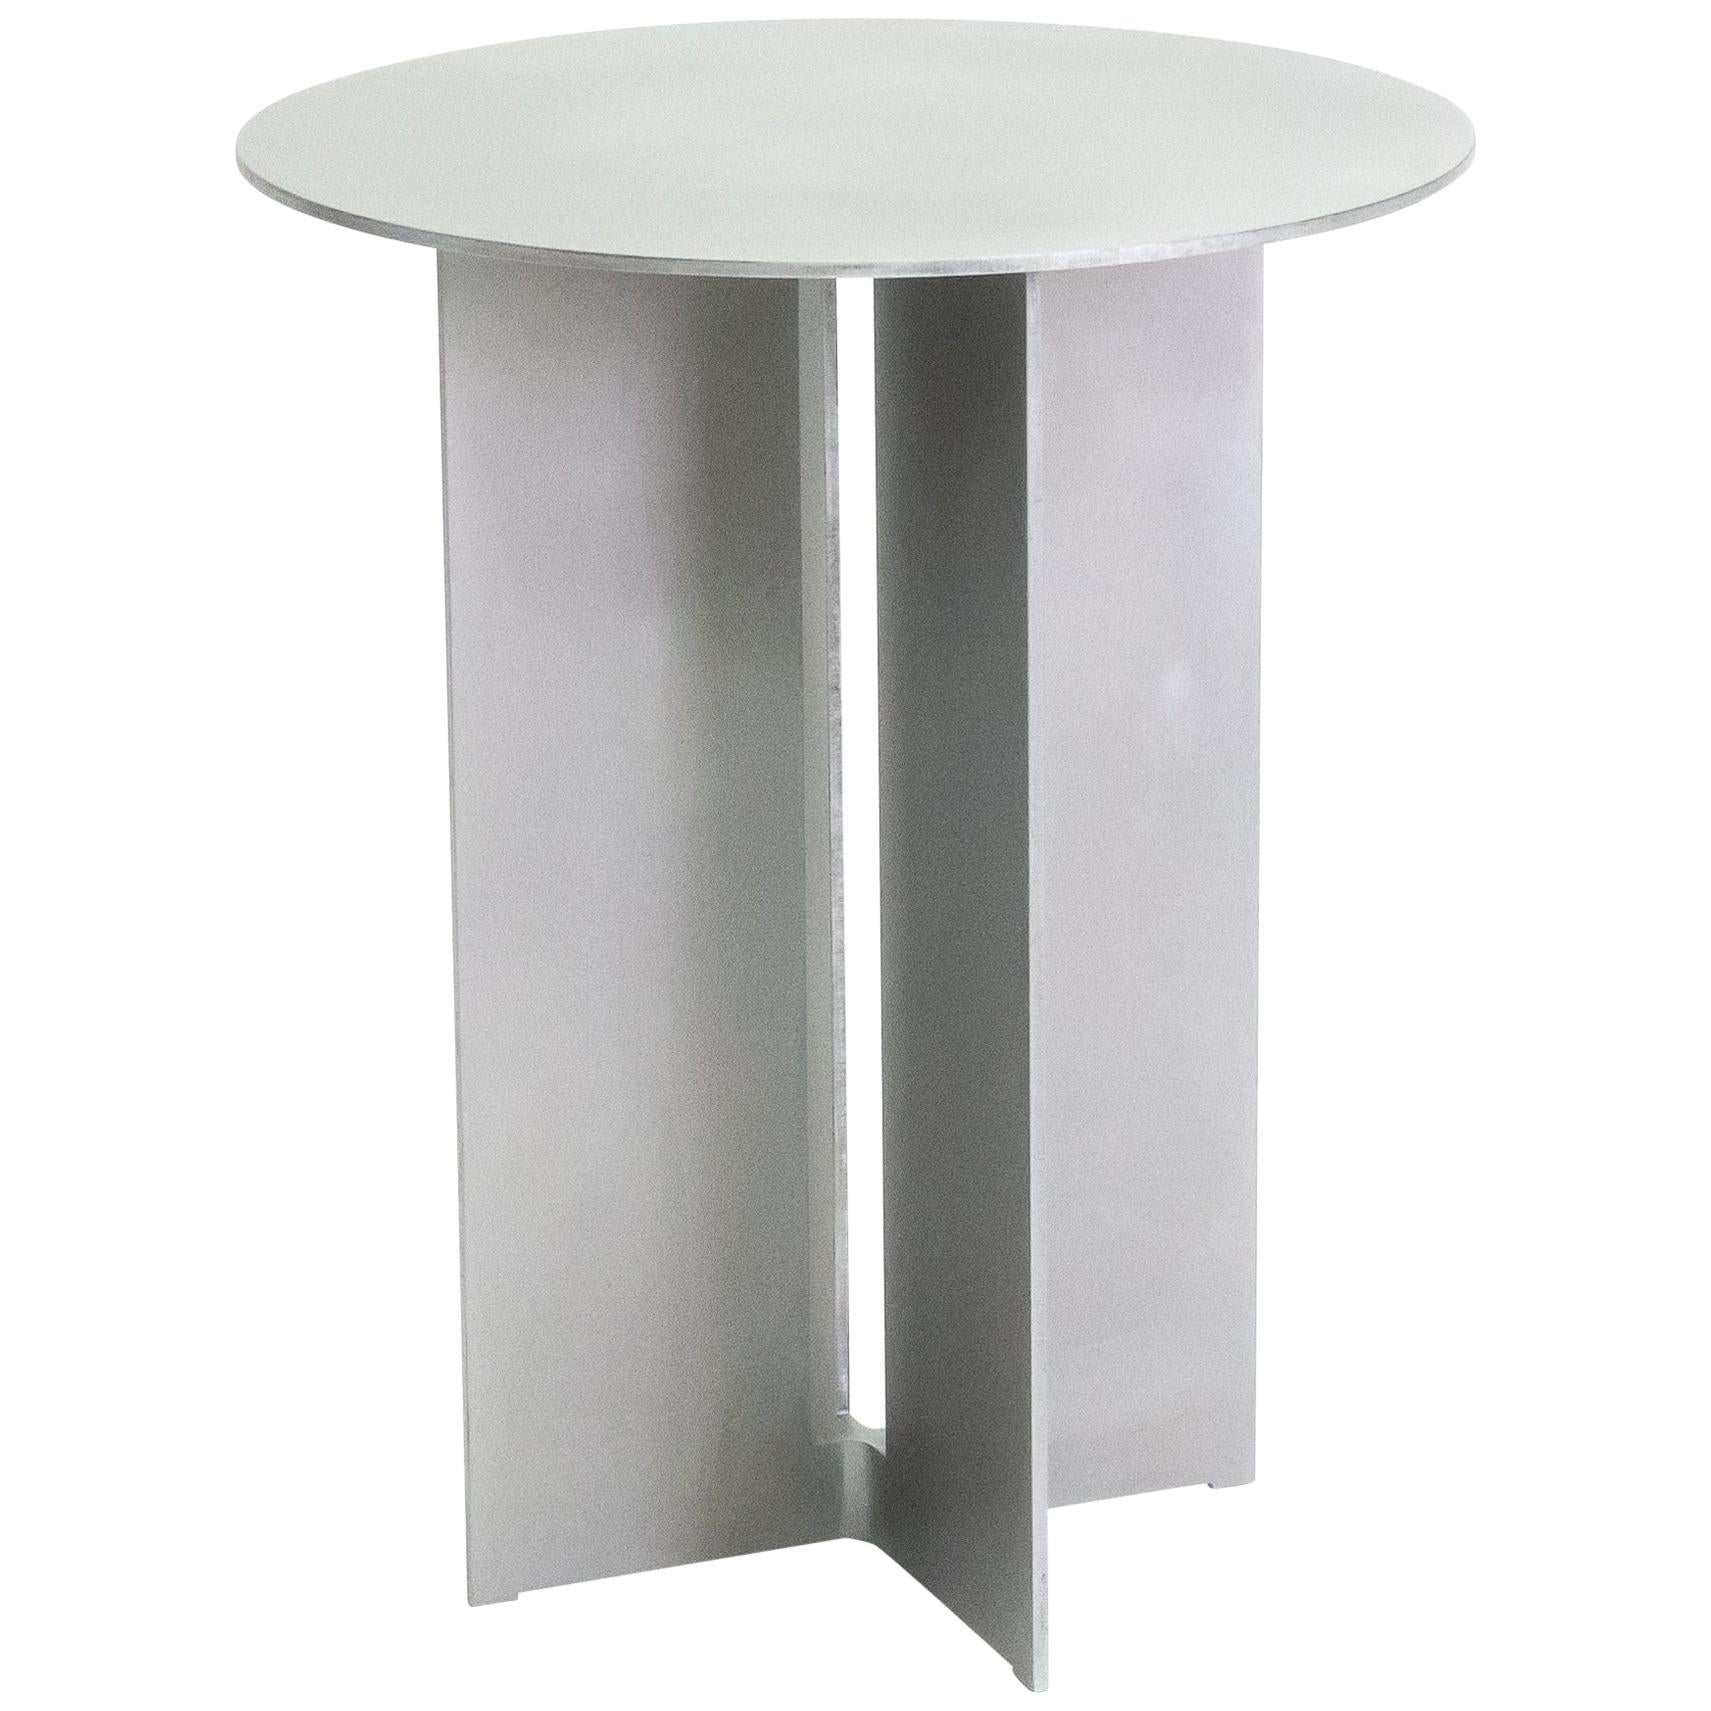 Table d'appoint Mers en aluminium satiné